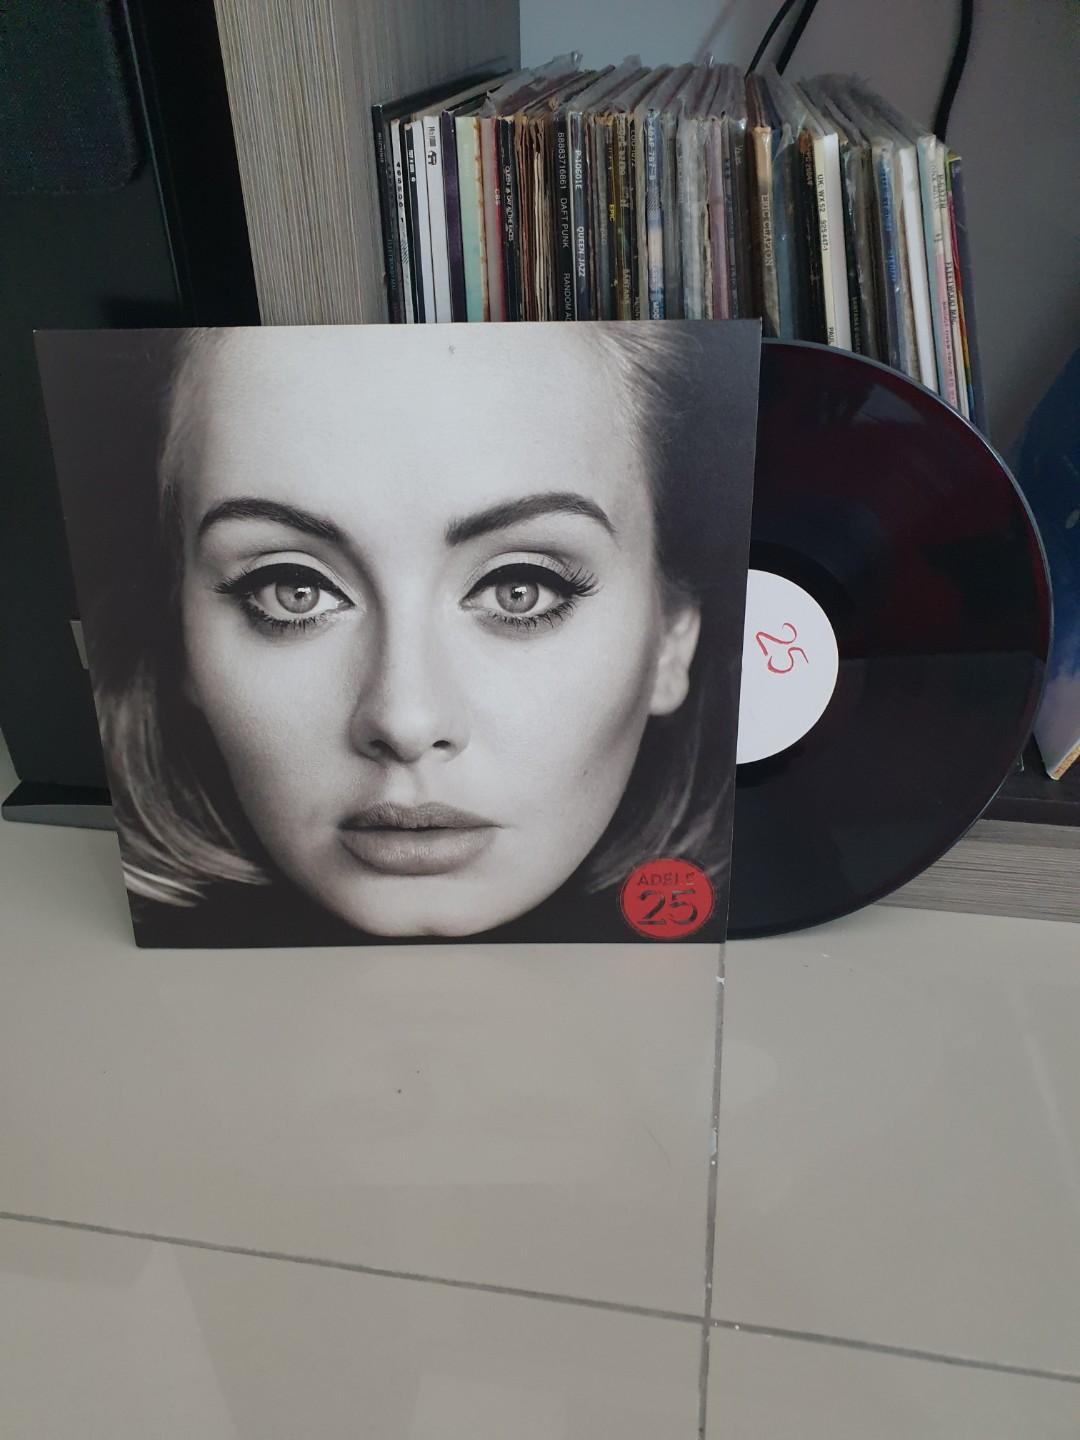 Adele 25 lp vinyl, Hobbies & Toys, Music & Media, CDs & DVDs on Carousell